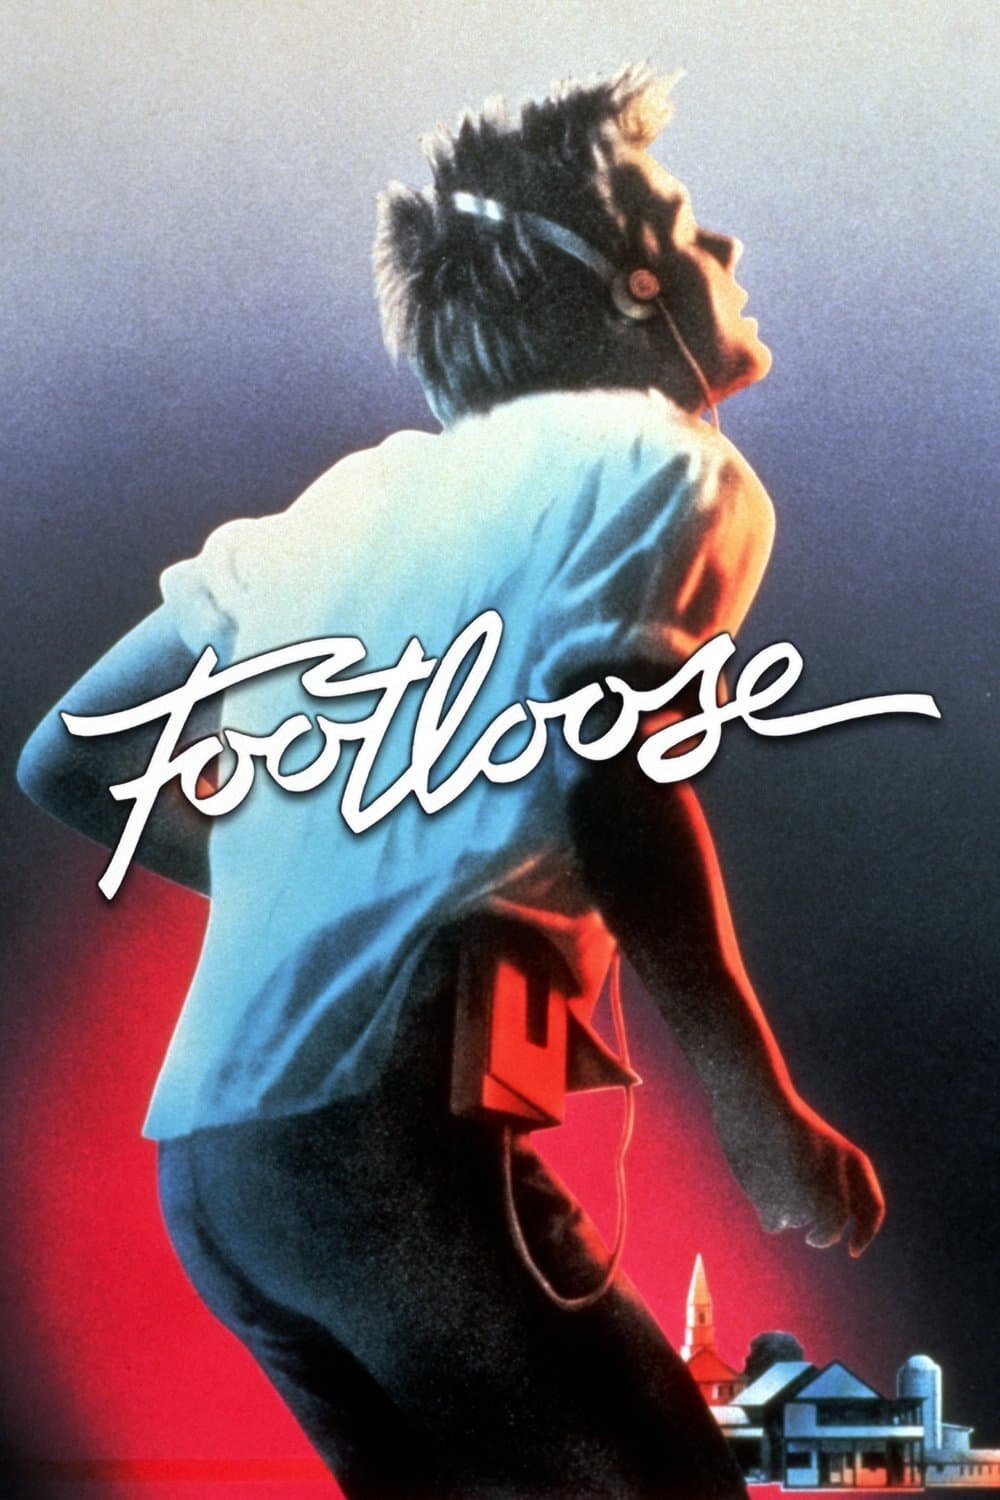 Affiche du film Footloose